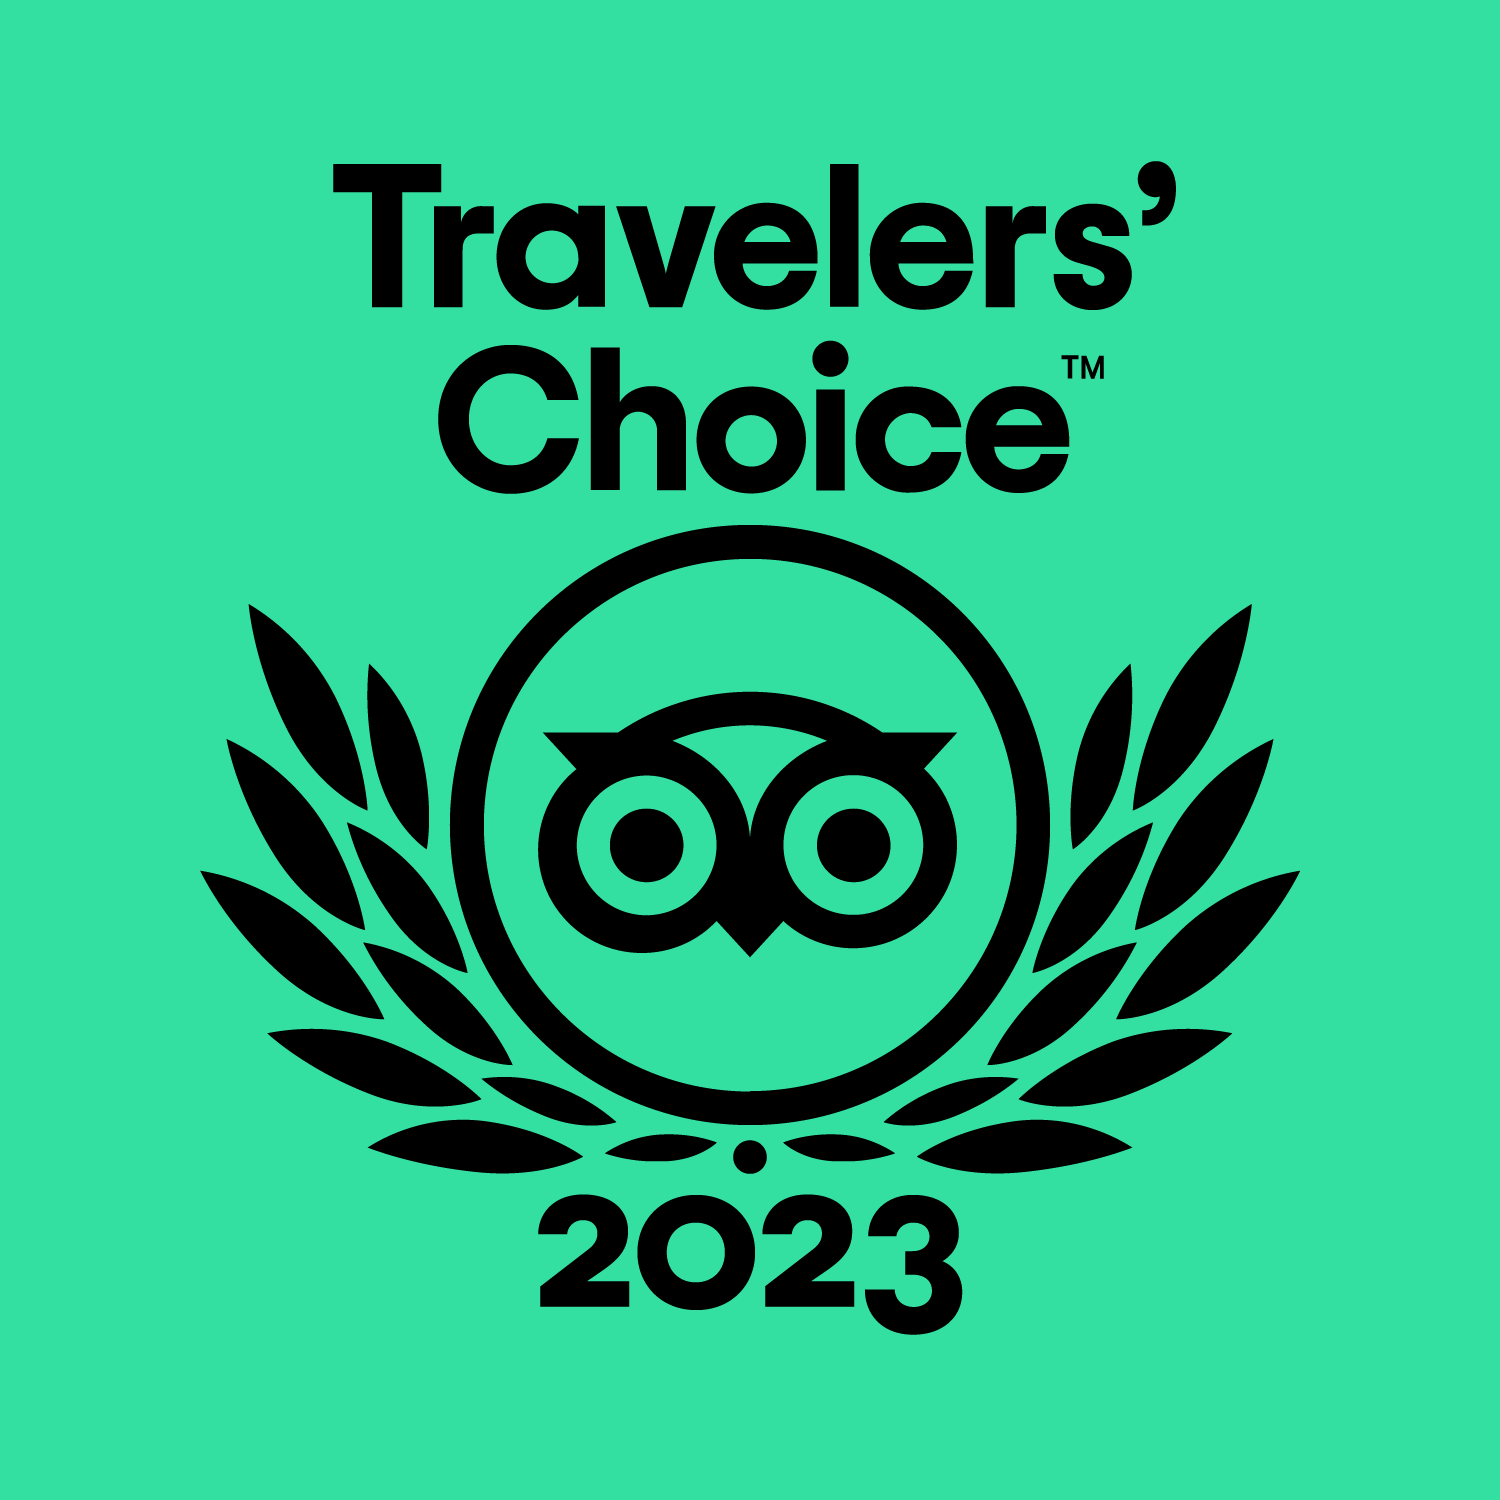 tripadvisor travellers choice 2023